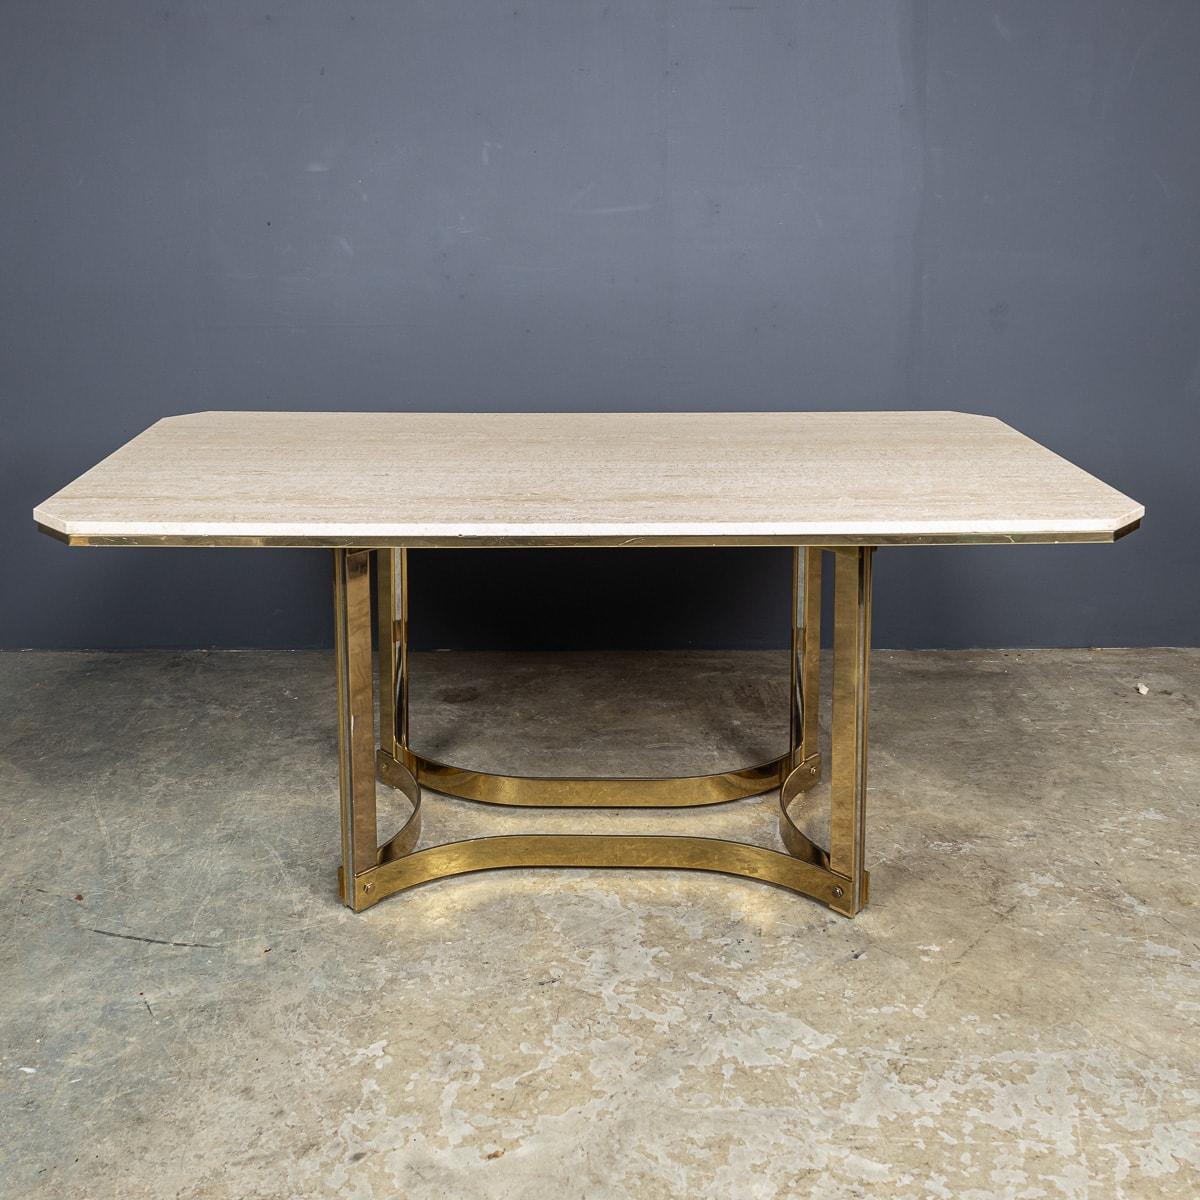 Une table de salle à manger vintage du milieu du 20e siècle imaginée par le célèbre designer Alessandro Albrizzi. Fabriqué en travertin dans une forme octogonale allongée, il est orné d'une bordure et d'une base luxueuses plaquées or, ajoutant une